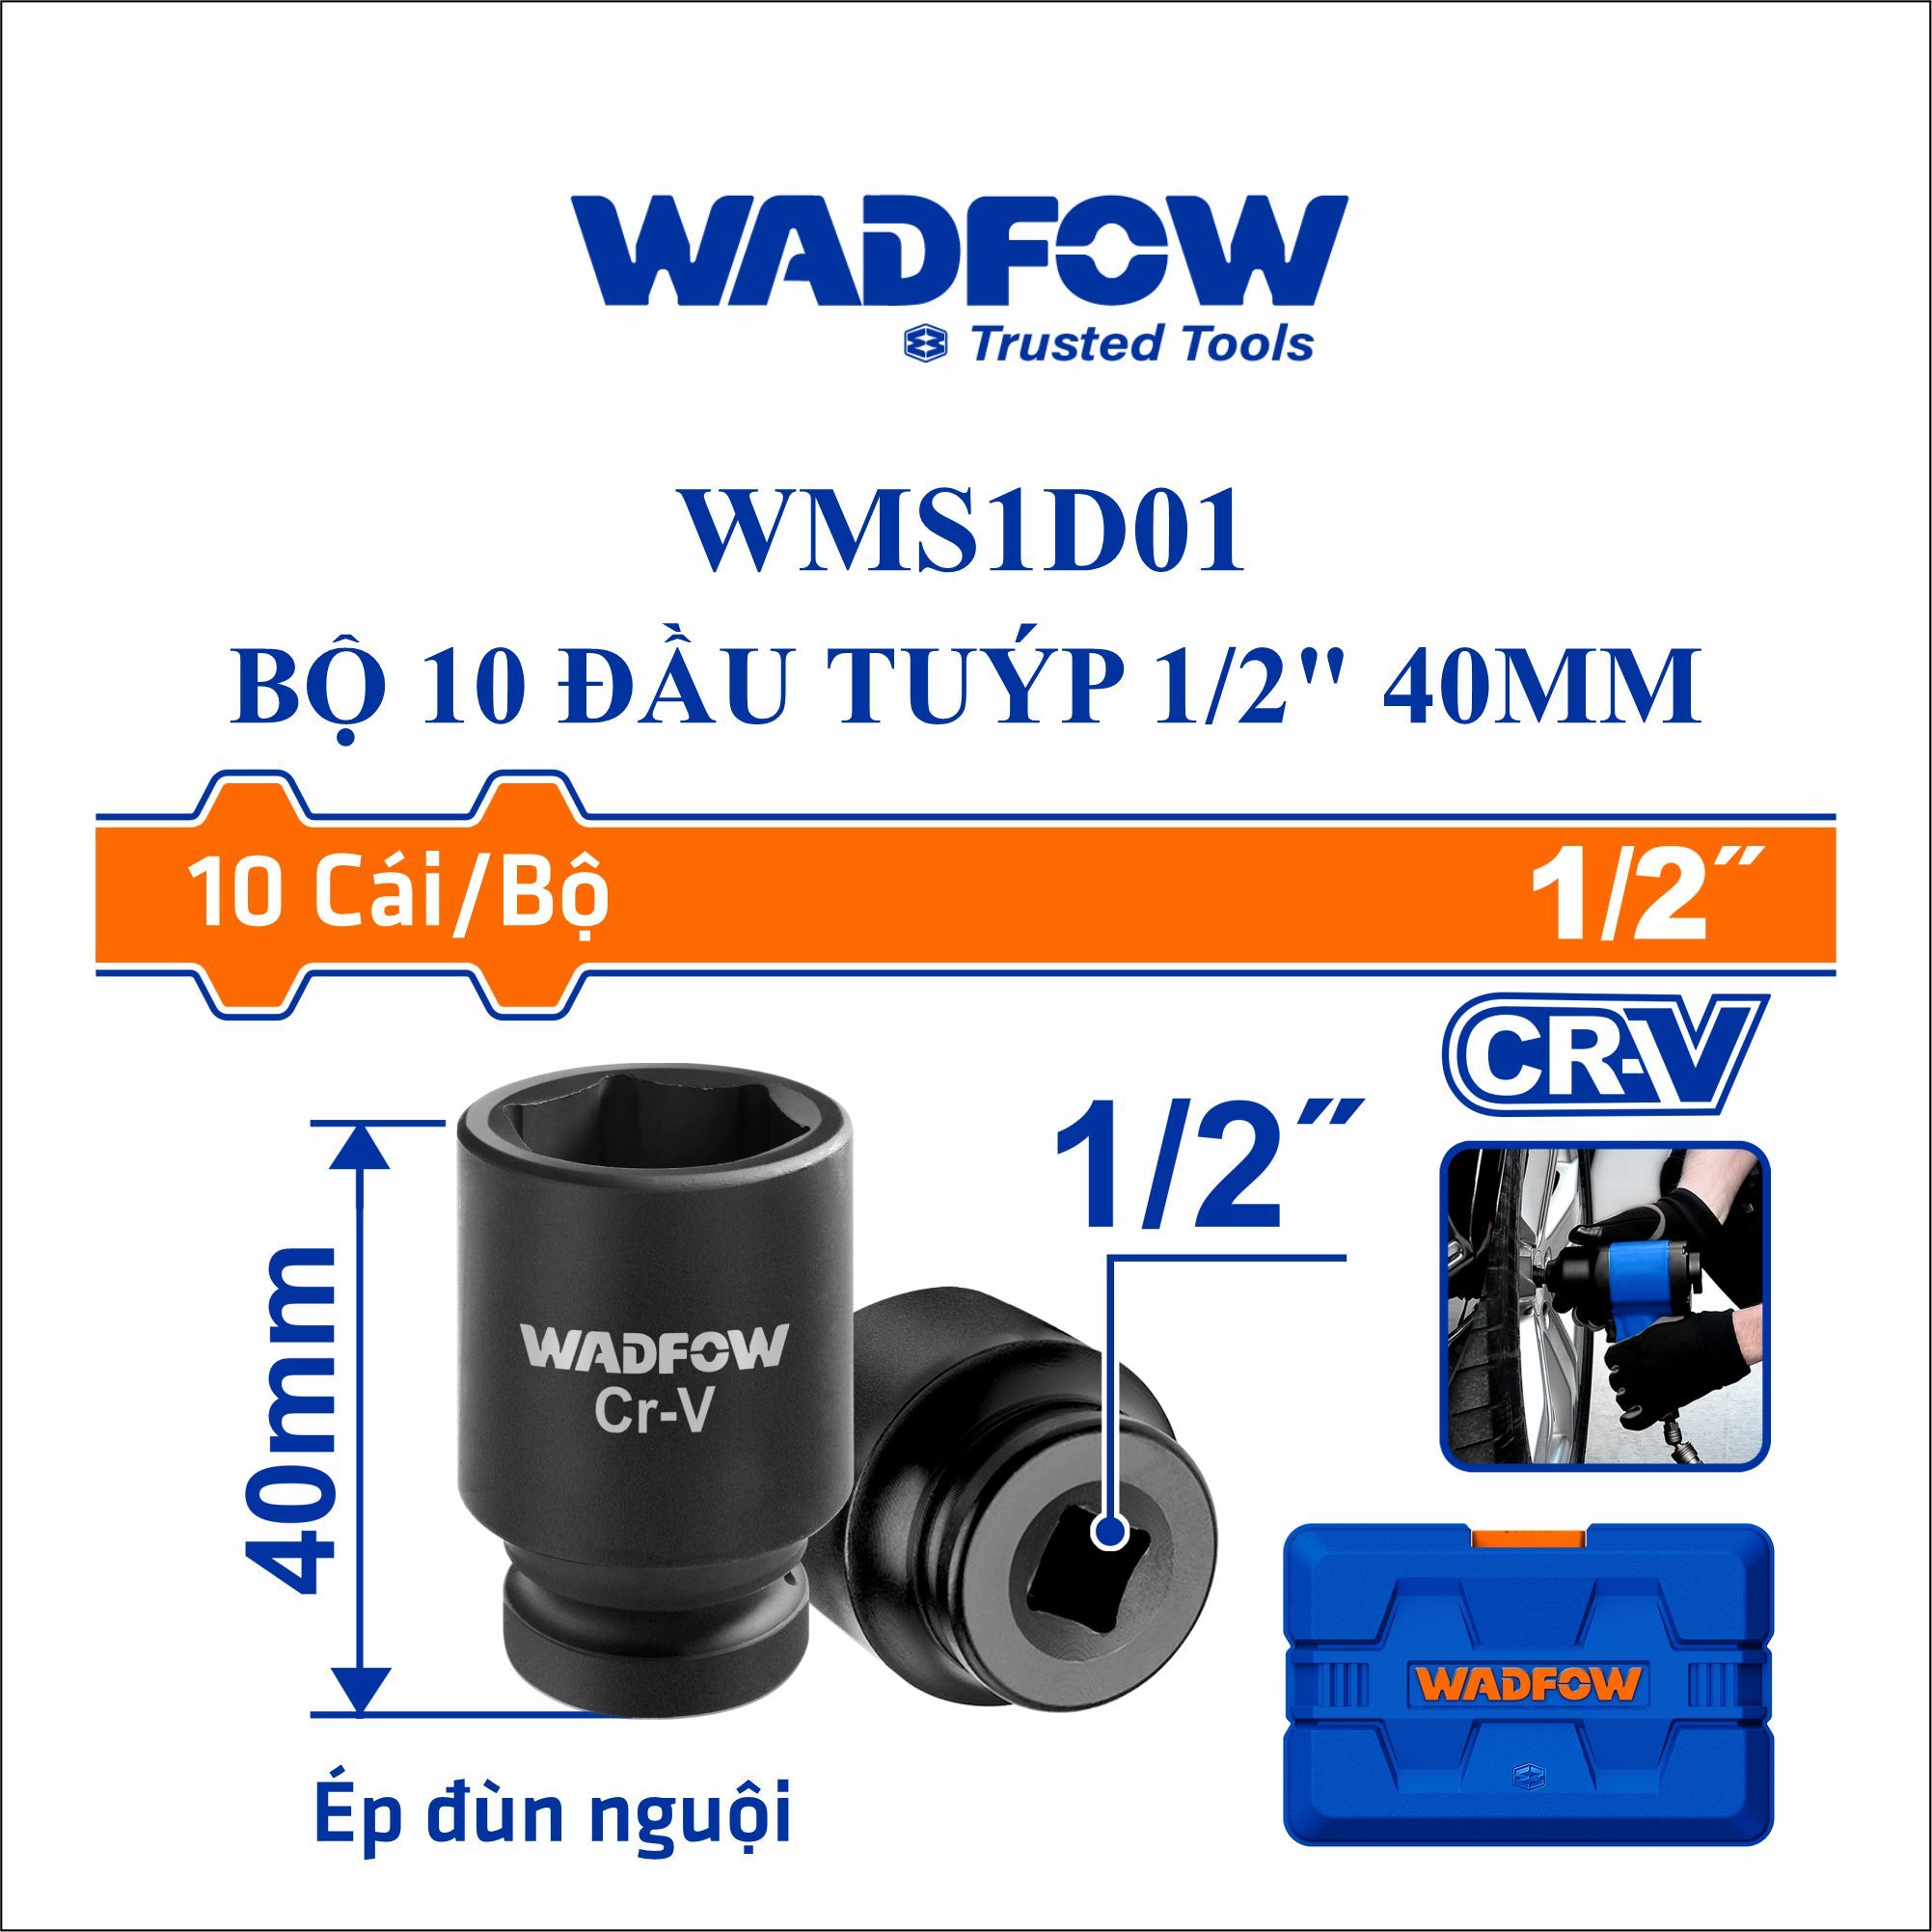  Bộ 10 đầu tuýp 1/2 Inch 40mm WADFOW WMS1D01 